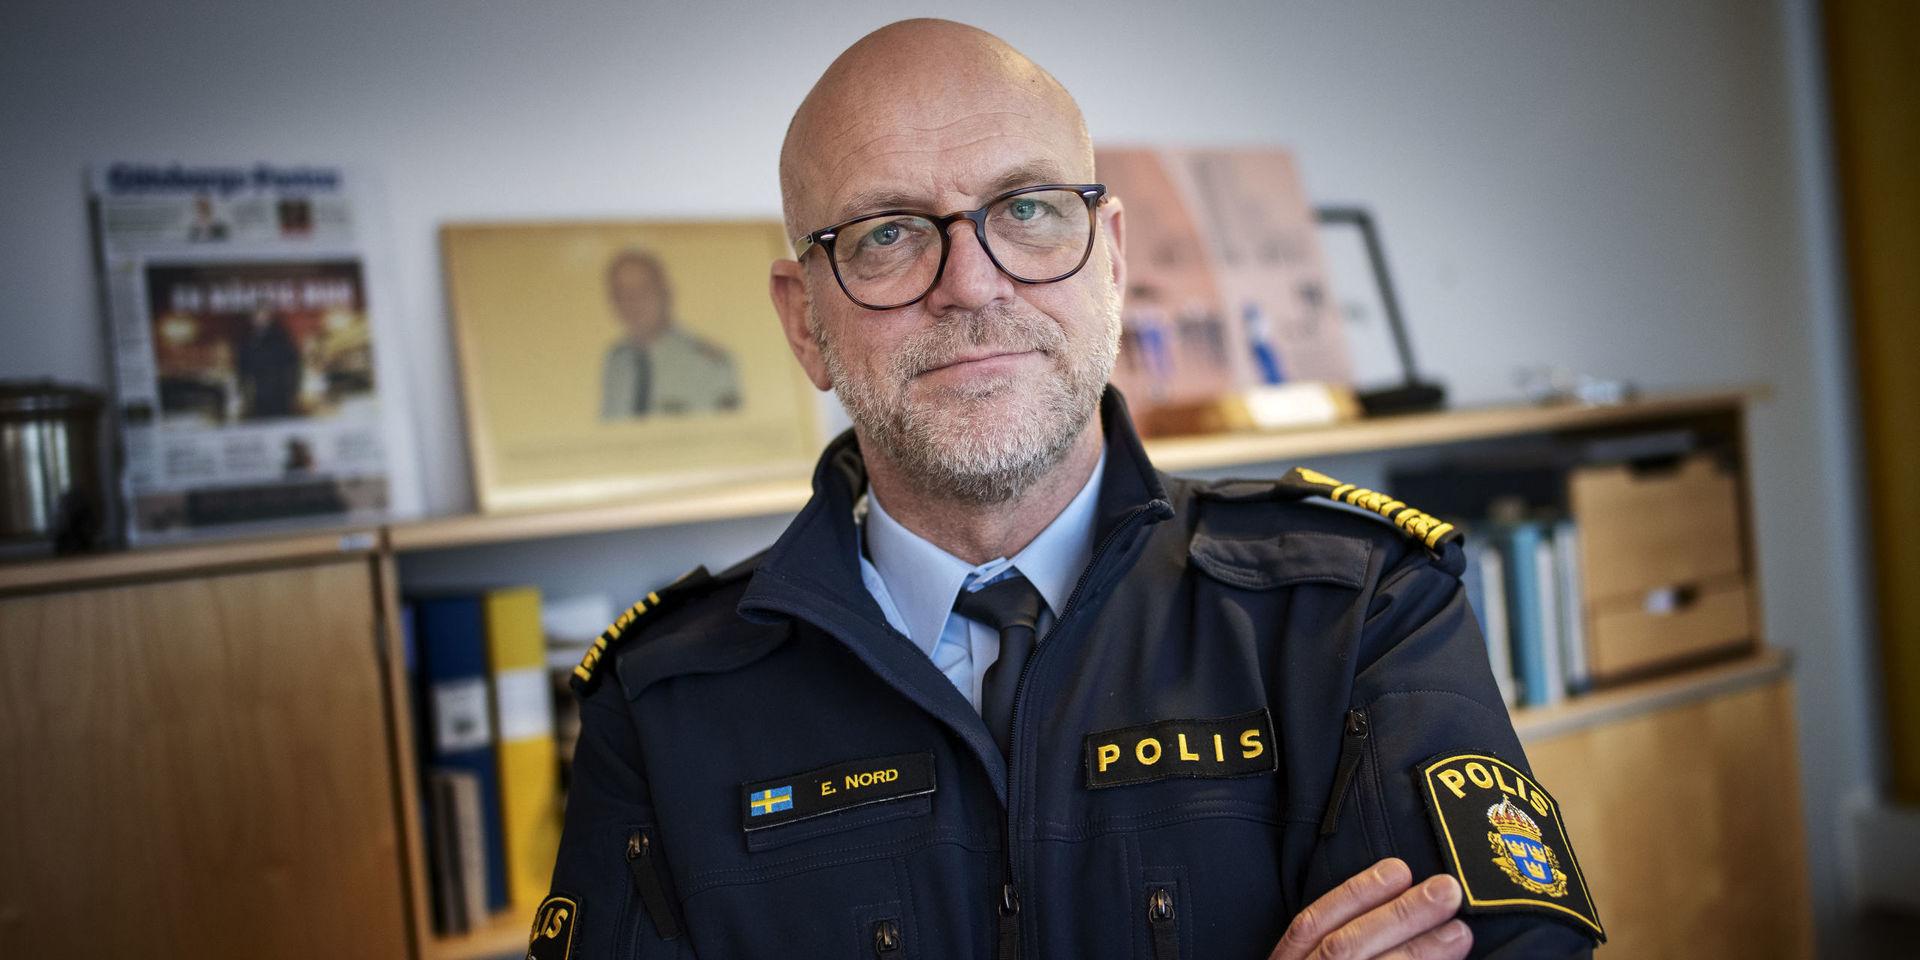 Erik Nord, polischef i Storgöteborg, berättar att man misslyckades att parera våldsamheterna – men att man tar lärdom av händelserna. 